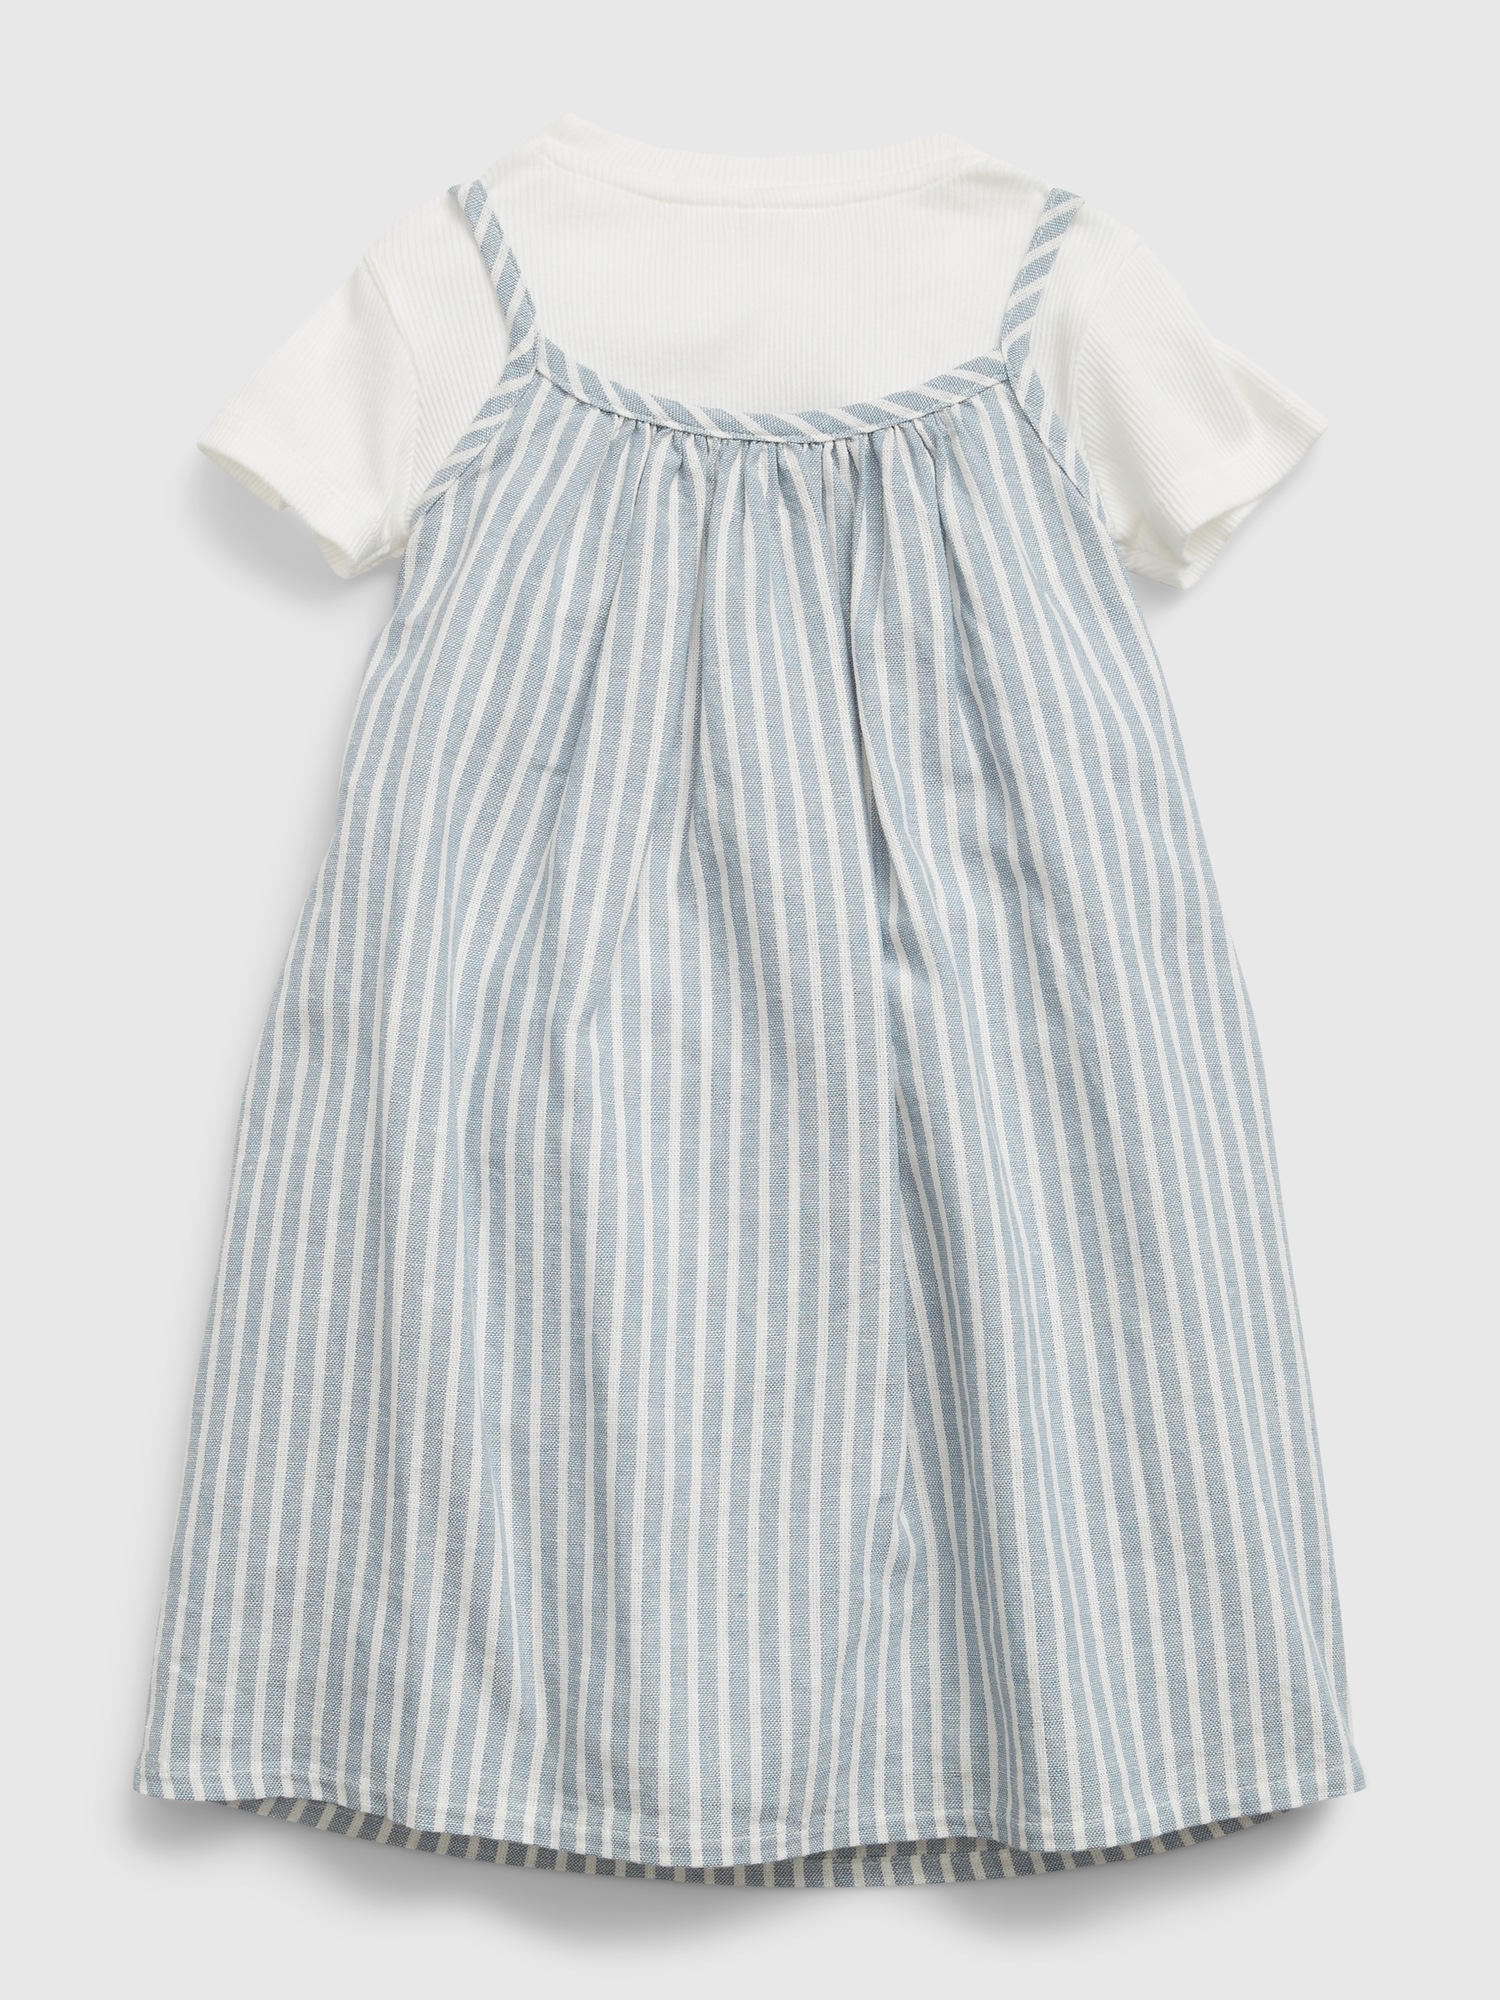 Toddler Linen Blend Layered Dress | Gap